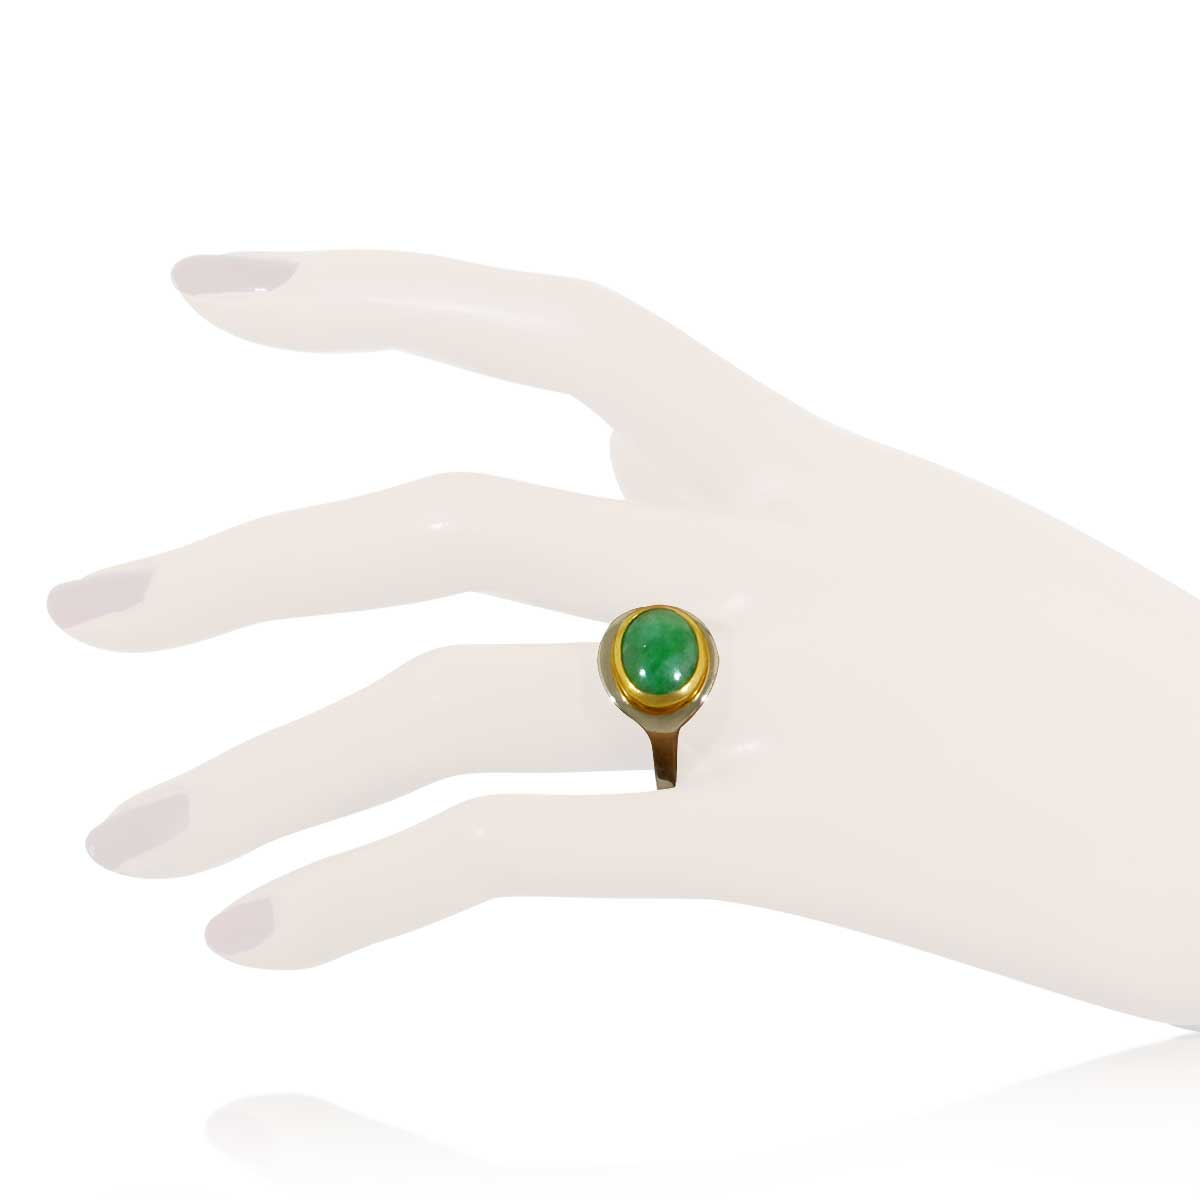 Imperial Jade Cabochon als Ring in 14 kt Gelb- und Weißgold mit 2,74ct echter chinesischer Imperial Jade